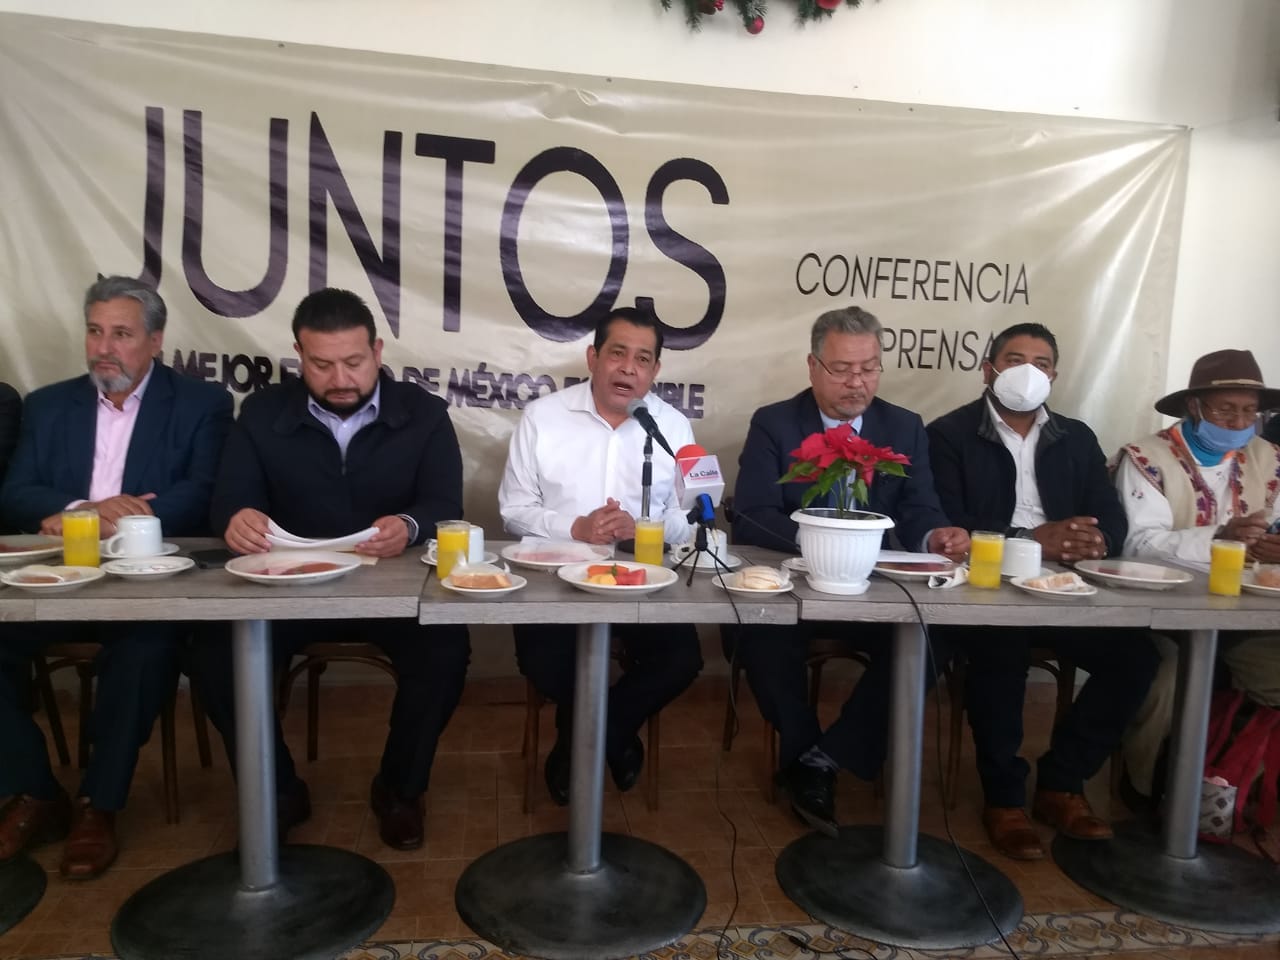 Nos pronunciamos en contra de la iniciativa del Ejecutivo estatal de incrementar cuatro nuevos impuestos: Juntos por un Mejor Estado de México es Posible